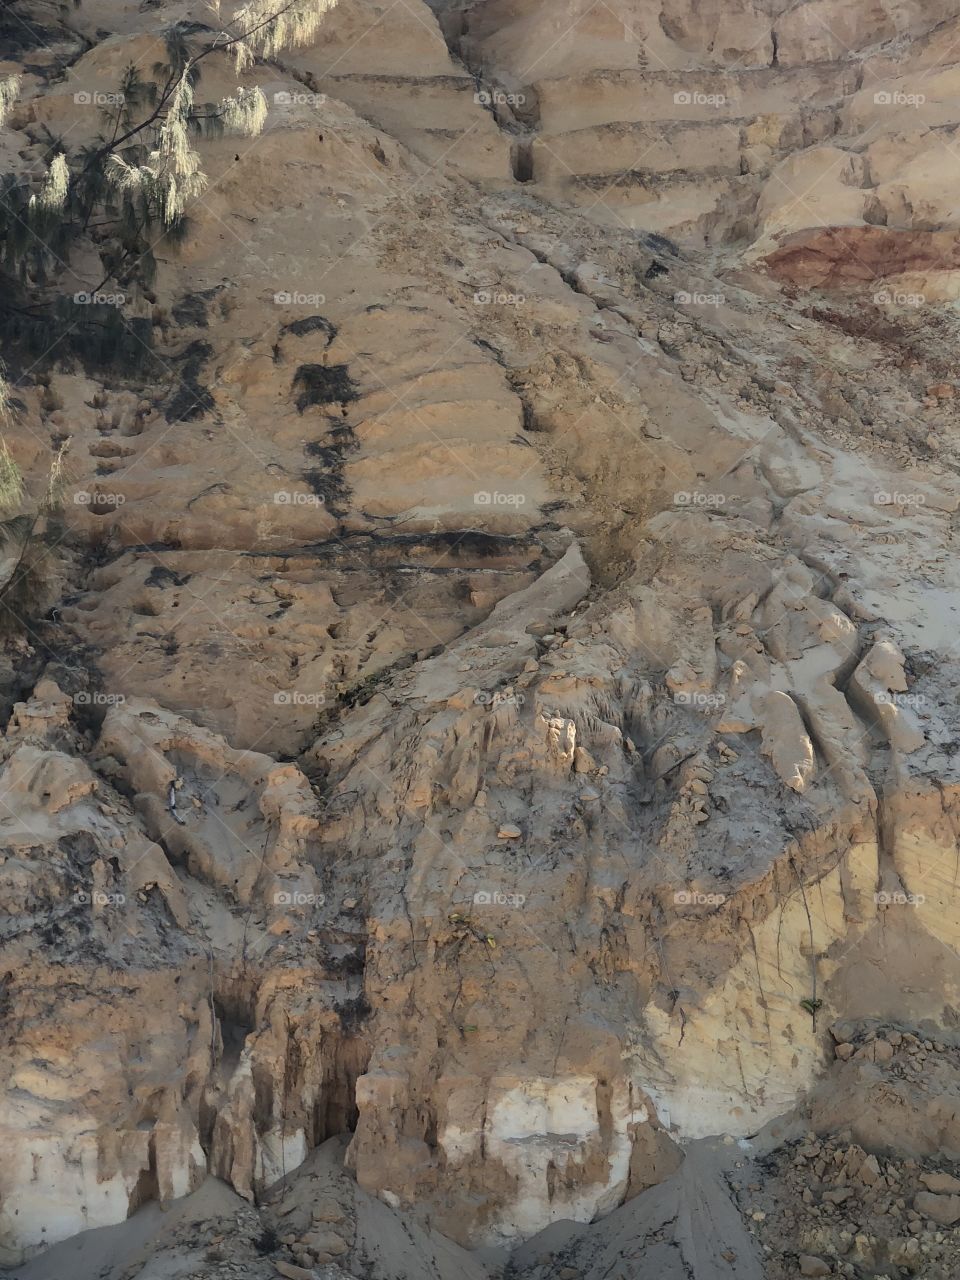 Sandstone cliff facing